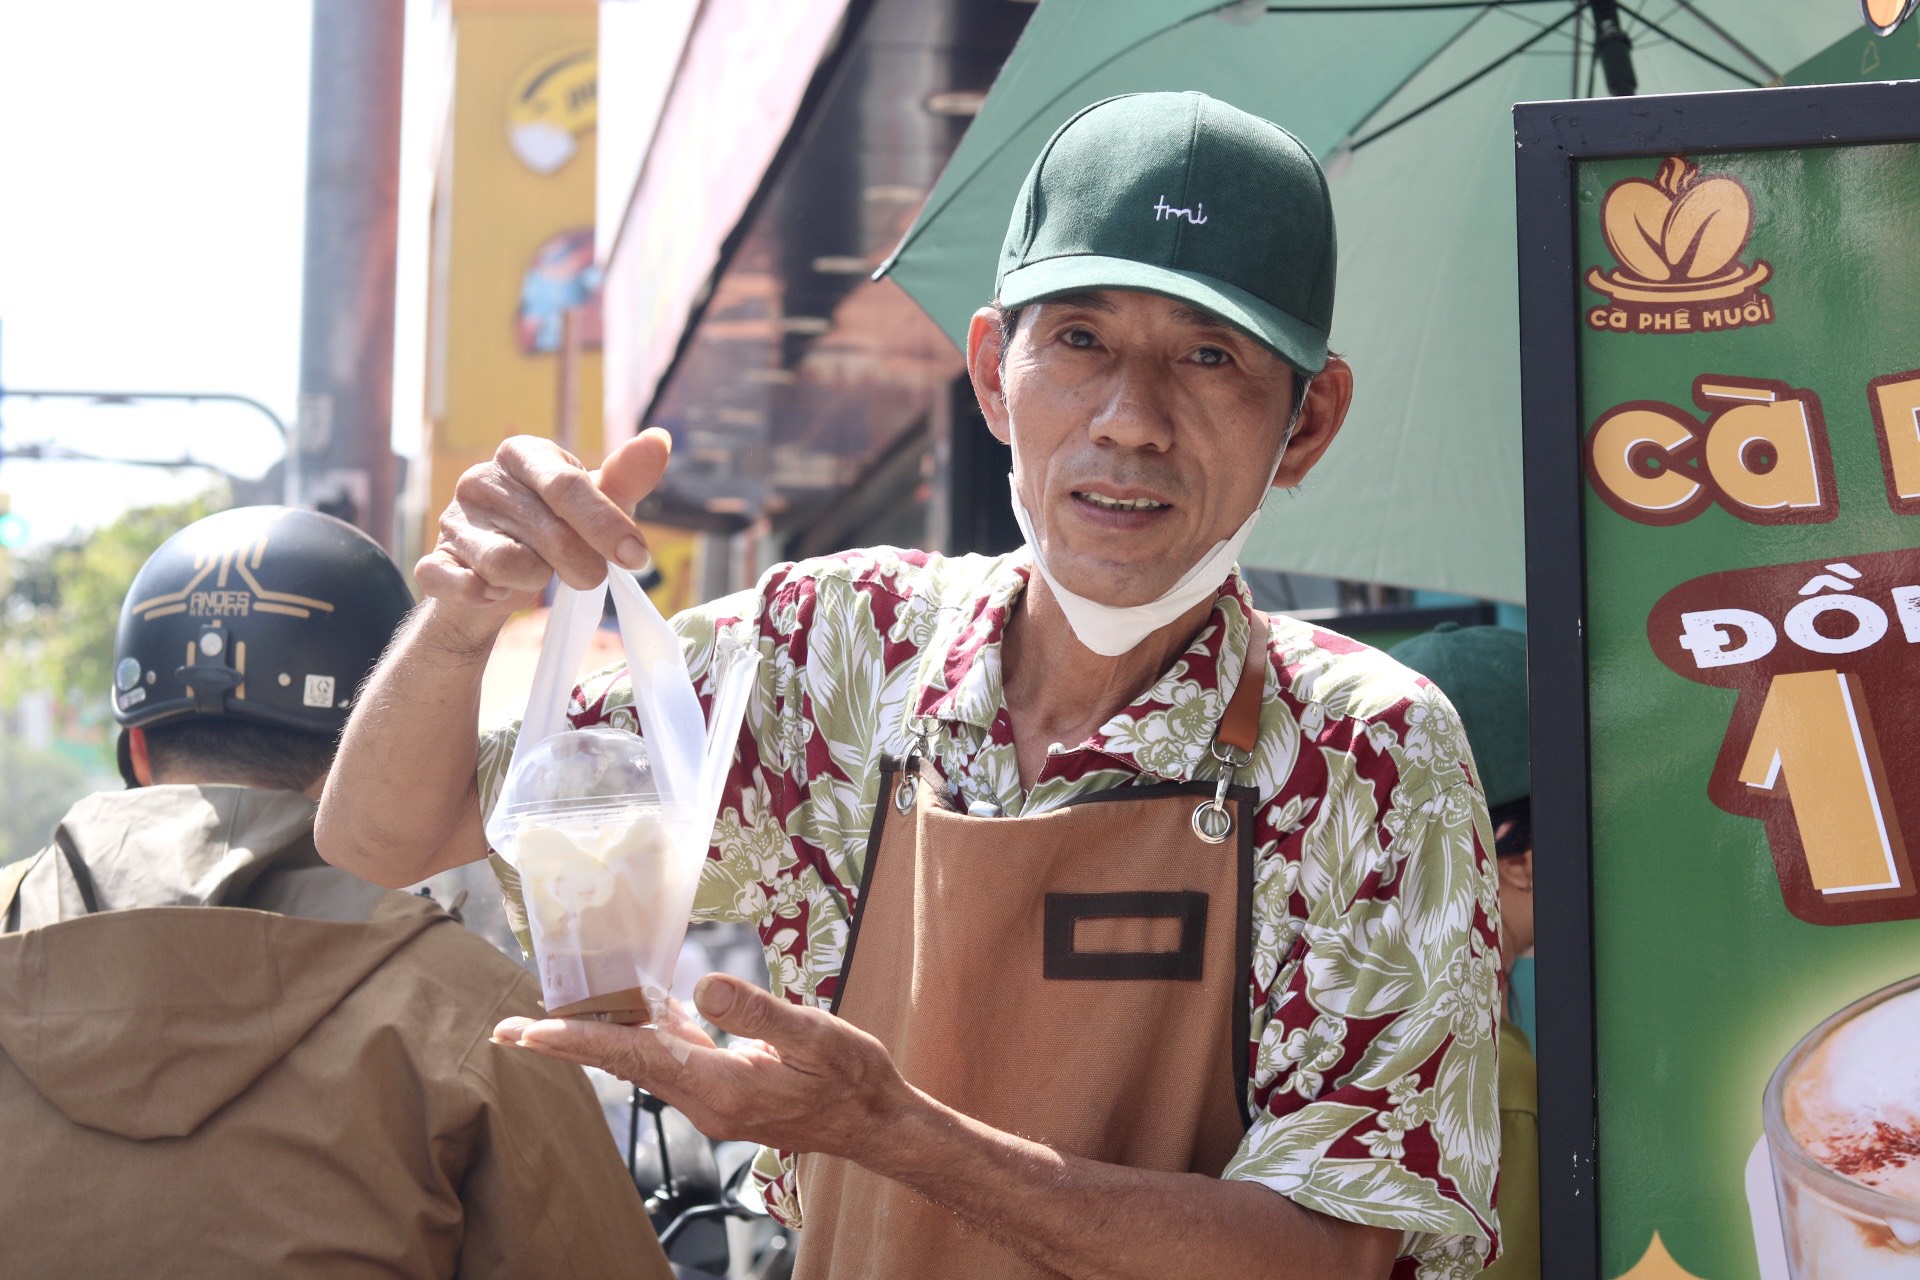 Xe cà phê 'khởi nghiệp' của U.60 nườm nượp khách ở TP.HCM